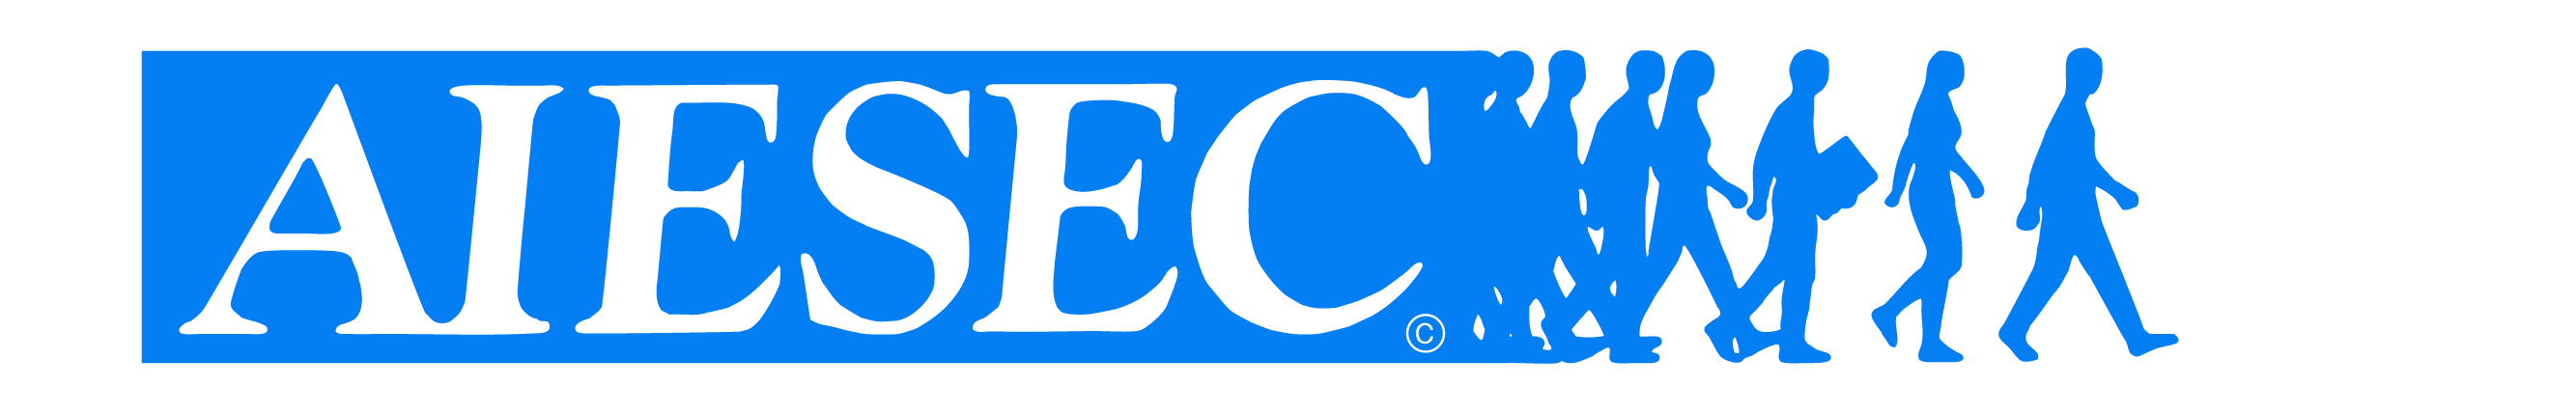 AIESEC Constanţa logo